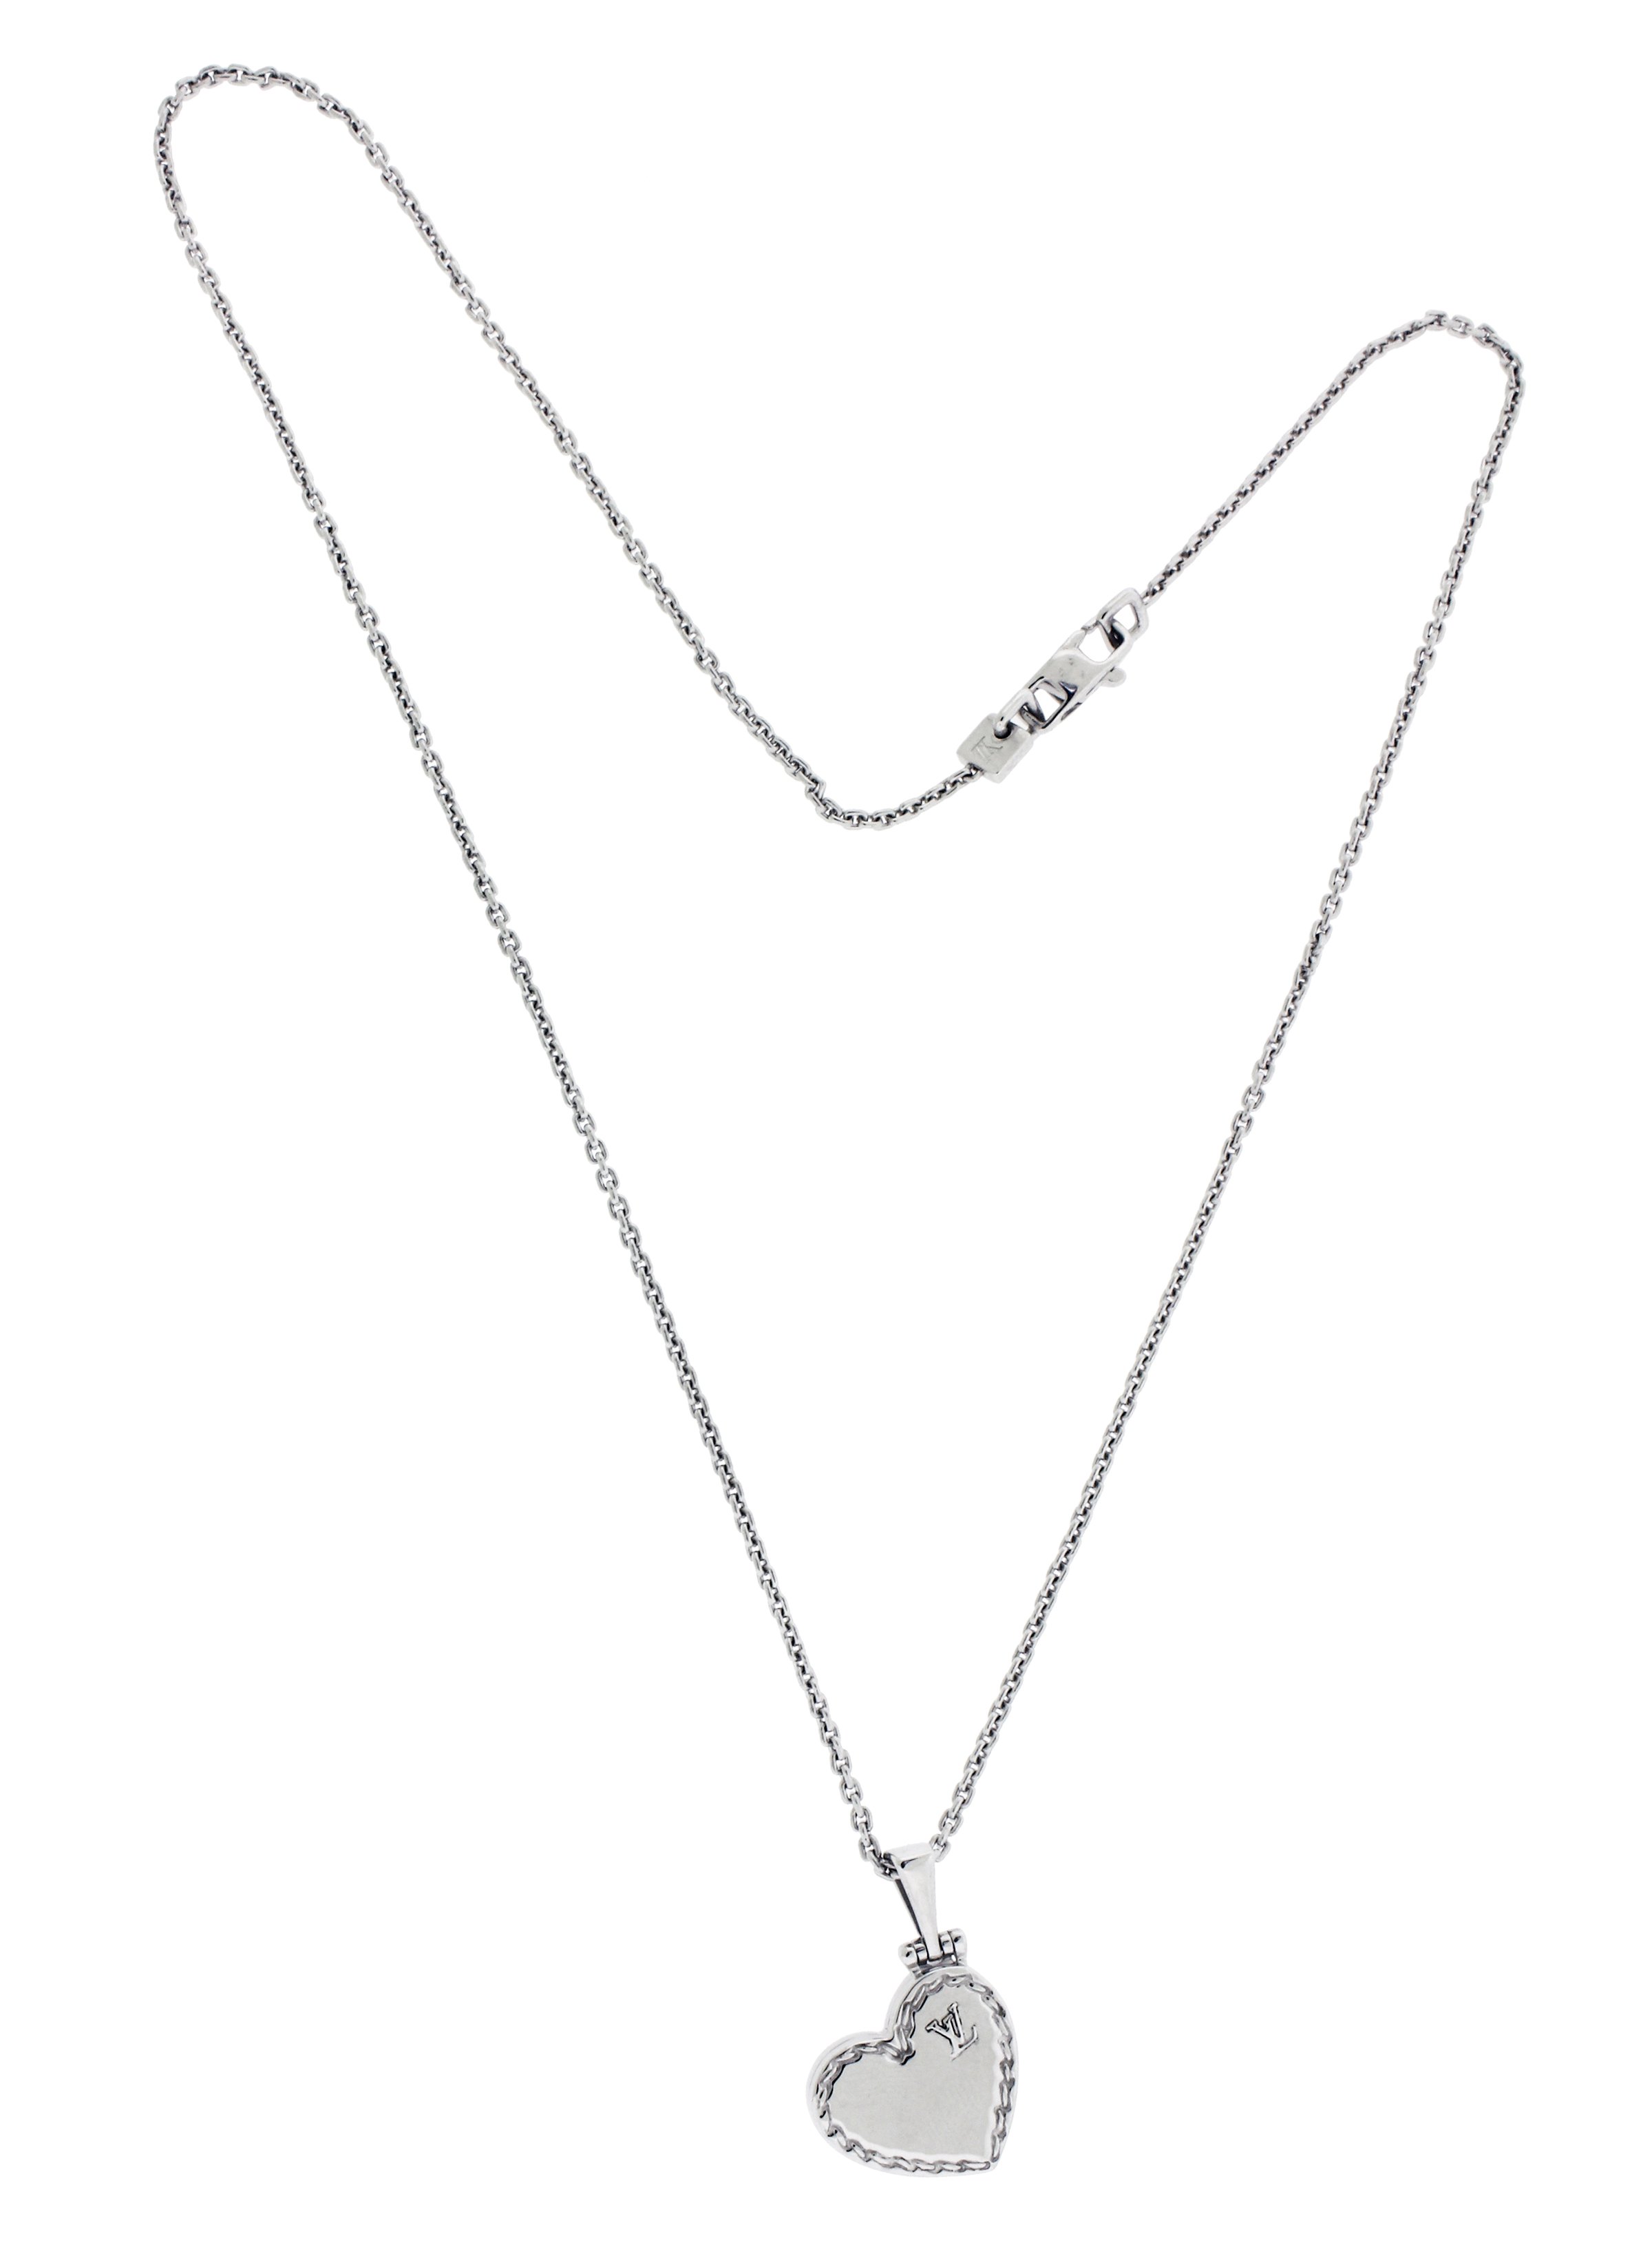 Louis Vuitton locket necklace in 18k 